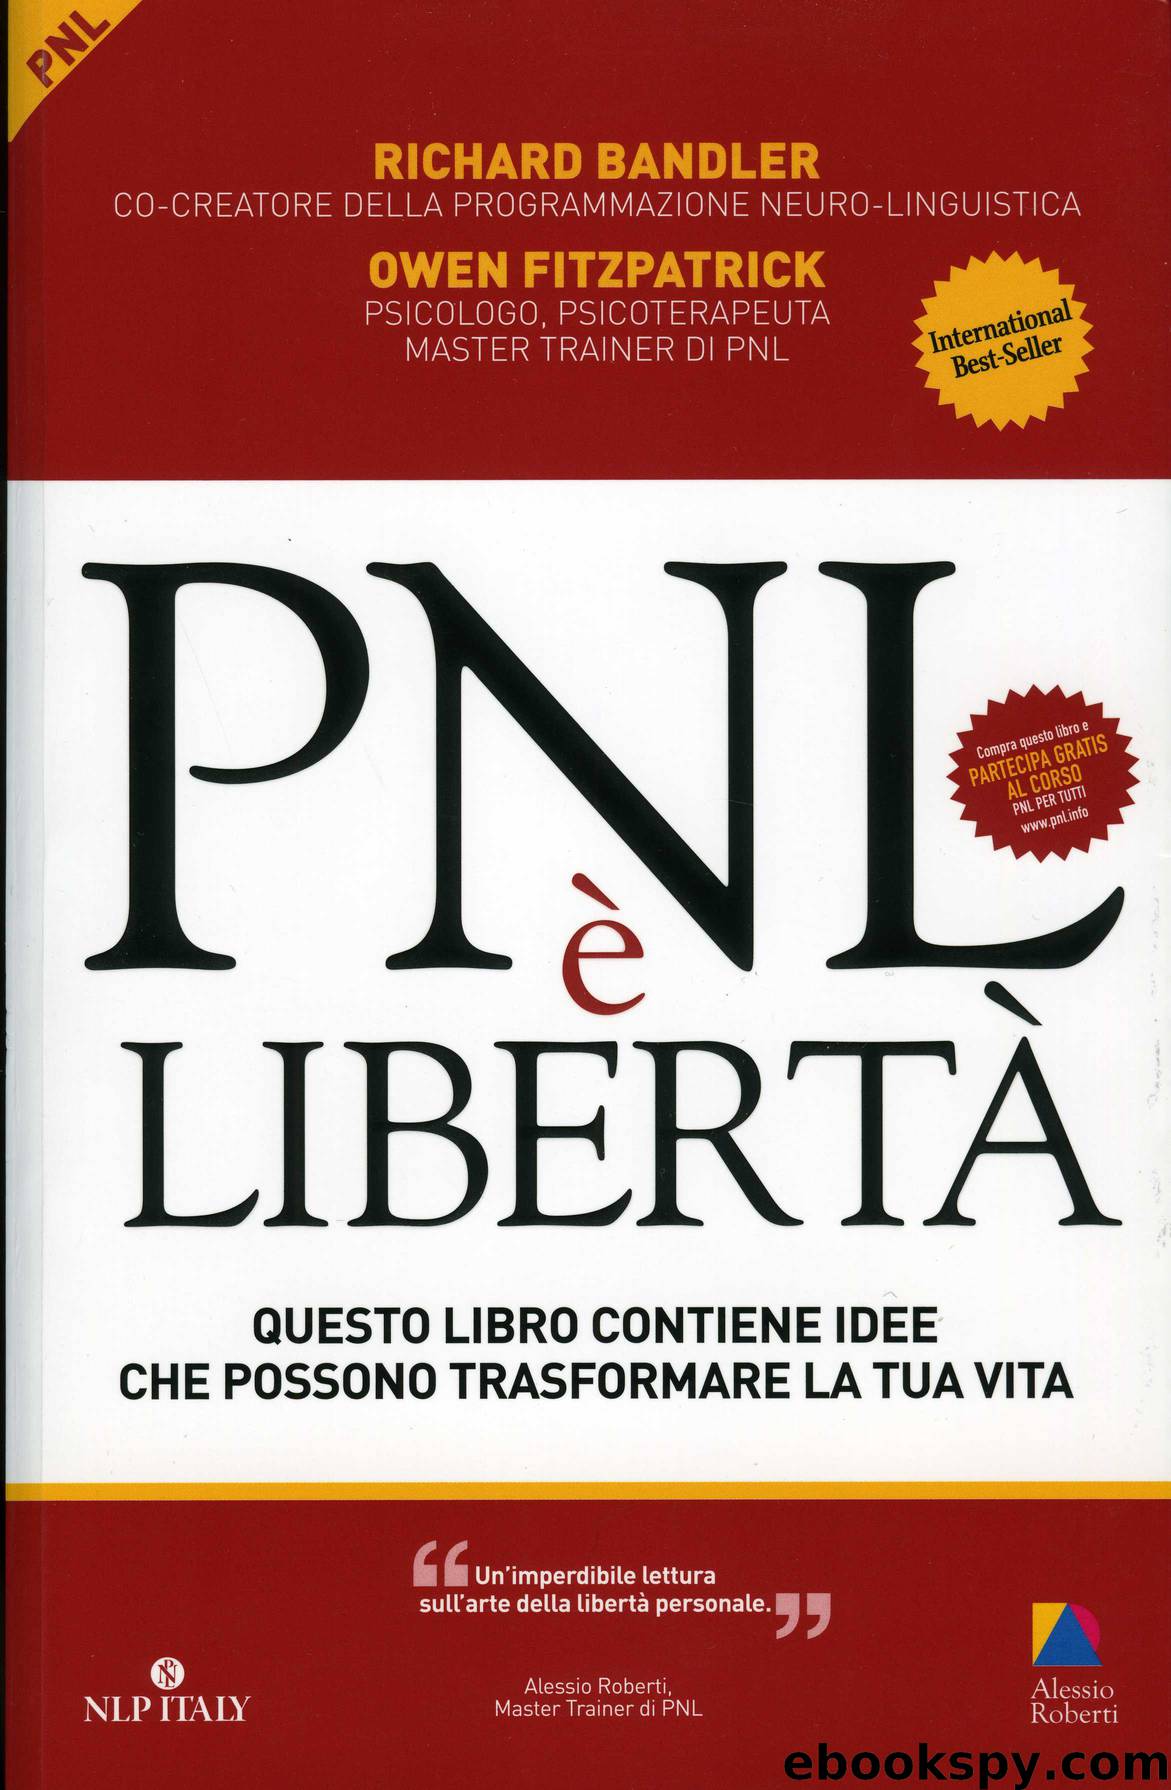 PNL è libertà by Bandler Richard & Fitzpatrick Owen